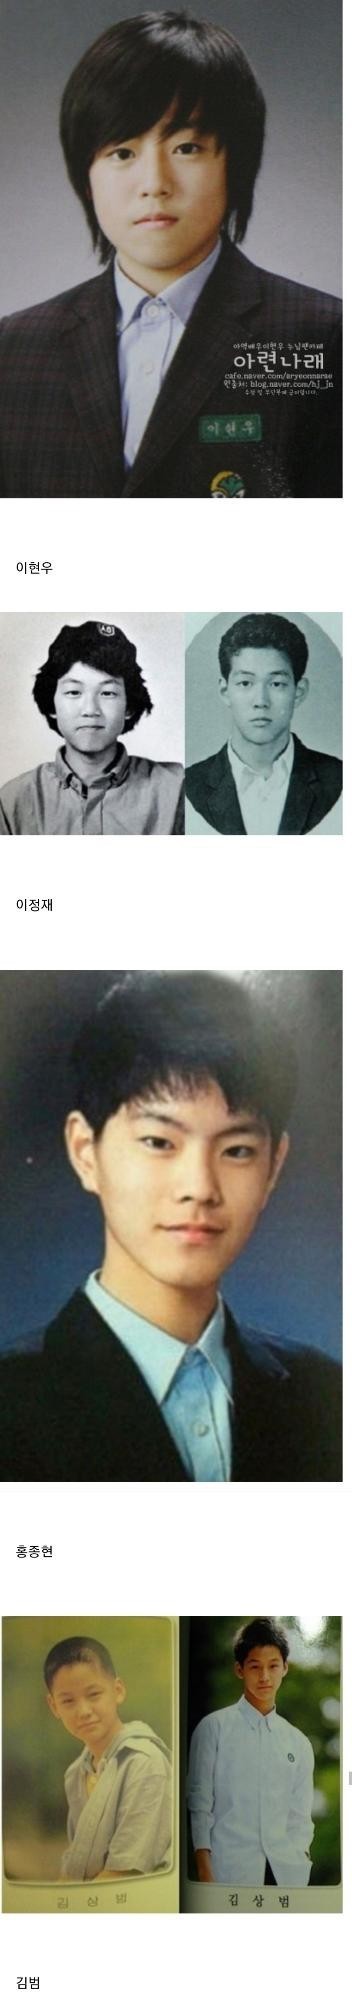 nokbeon.net-한국 남자배우들 졸업사진.jpg-5번 이미지